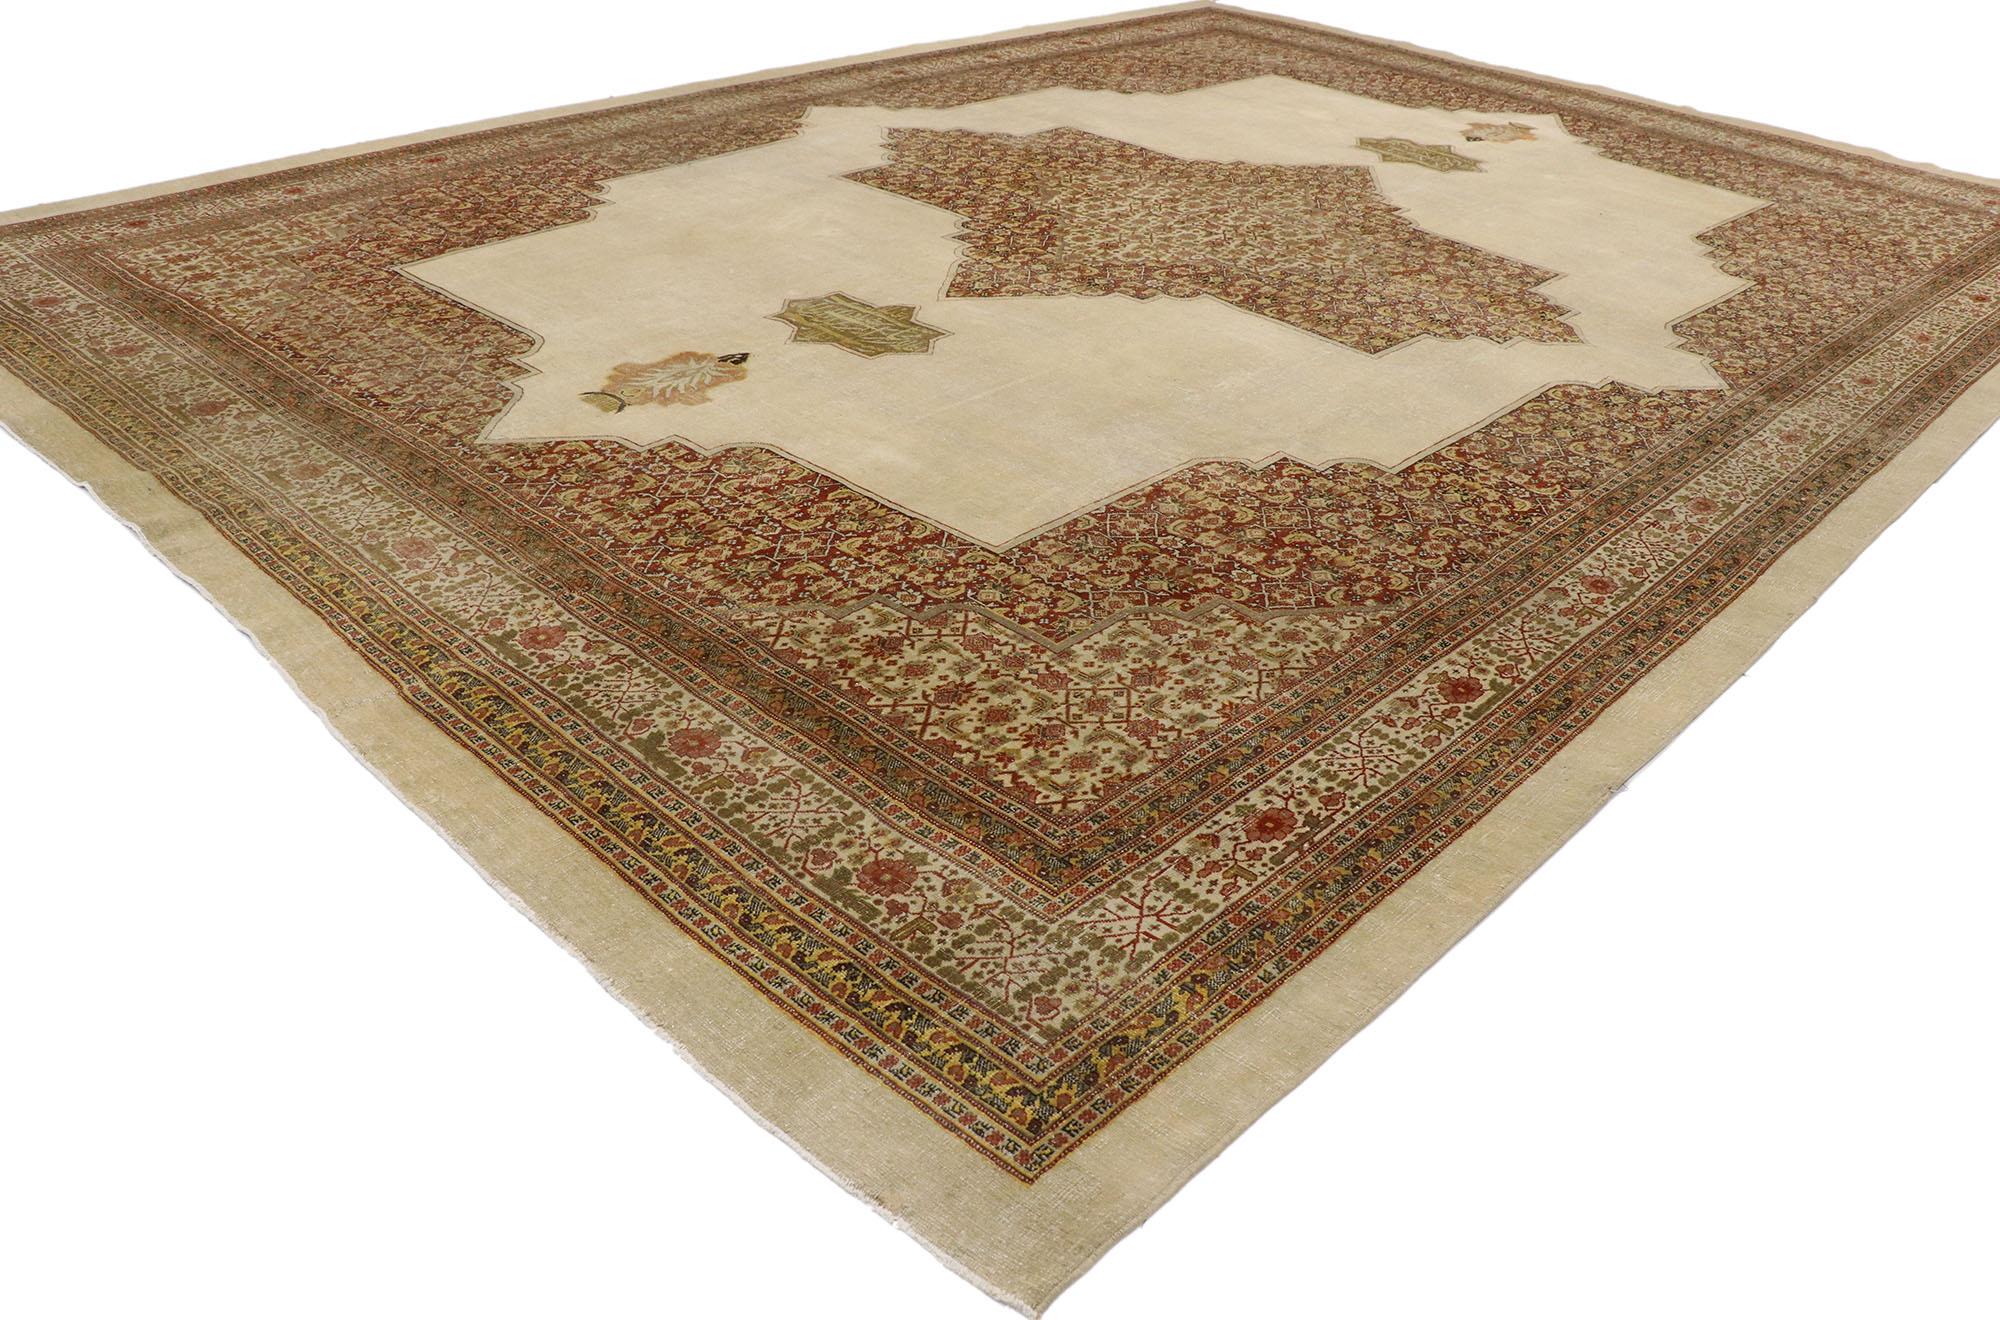 53250 Tapis Persan Tabriz ancien et usé, de style artisanal rustique et moderne. Avec ses détails ornés et sa composition affectueusement usée par le temps, ce tapis Tabriz persan ancien en laine nouée à la main est prêt à impressionner. Le champ